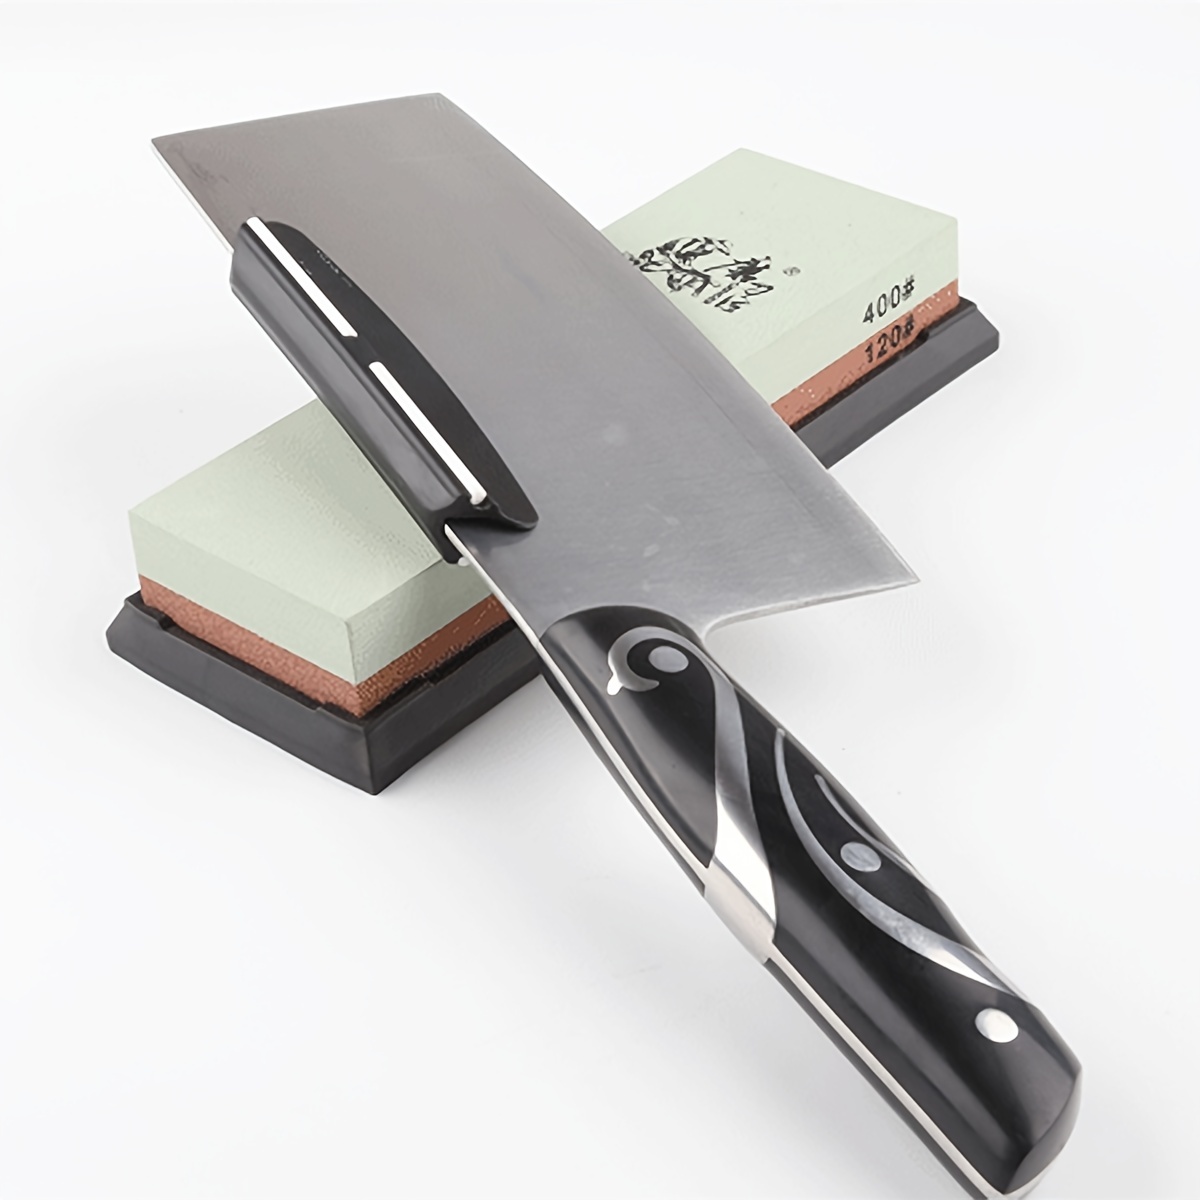 Kitchen Rolling Knife Sharpener Kit - Wooden Luxury Diamond Roller Knife  Sharpening Tool Set for Kitchen Knives Wasabi Knife Sharpener Kit Offers  15